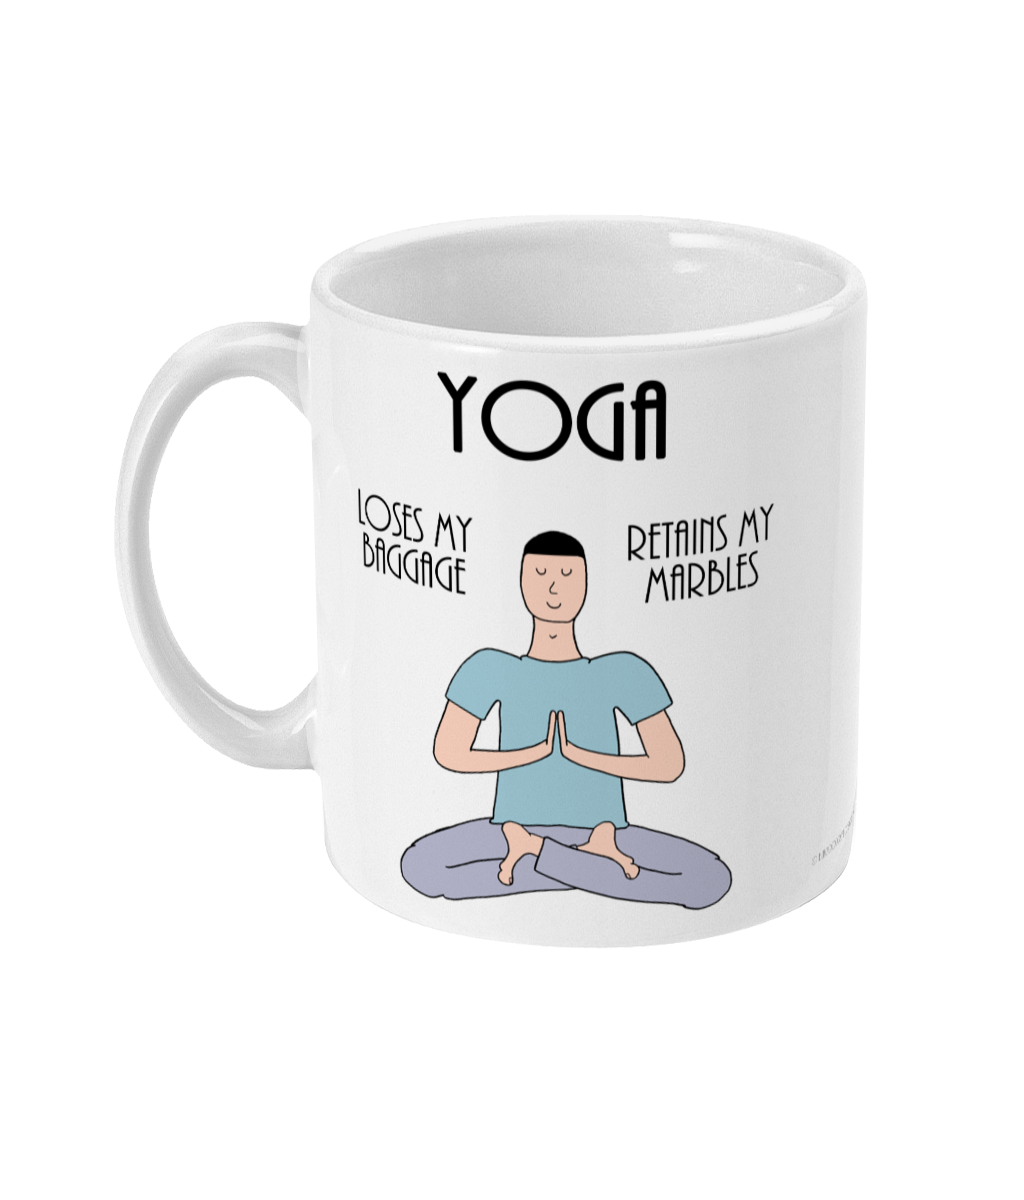 Funny Yoga Coffee Mug - Yoga Mug- Loses Baggage - Retains Marbles - Man -  11oz Ceramic